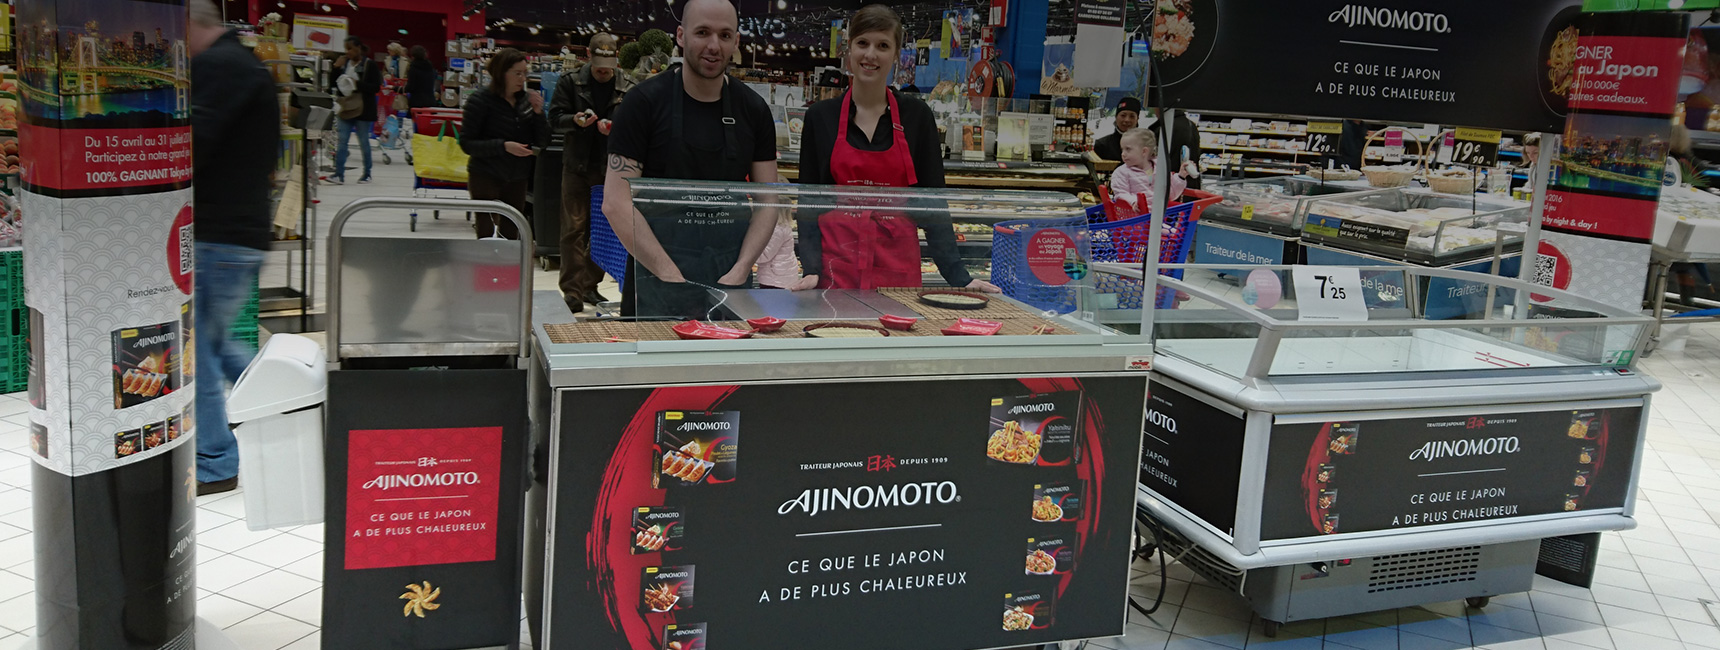 La cuisine mobile d'ajinomoto pour le lancement de leur produit japonais - Keemia Shopper Marketing - Agence d'activation shopper marketing phygitale